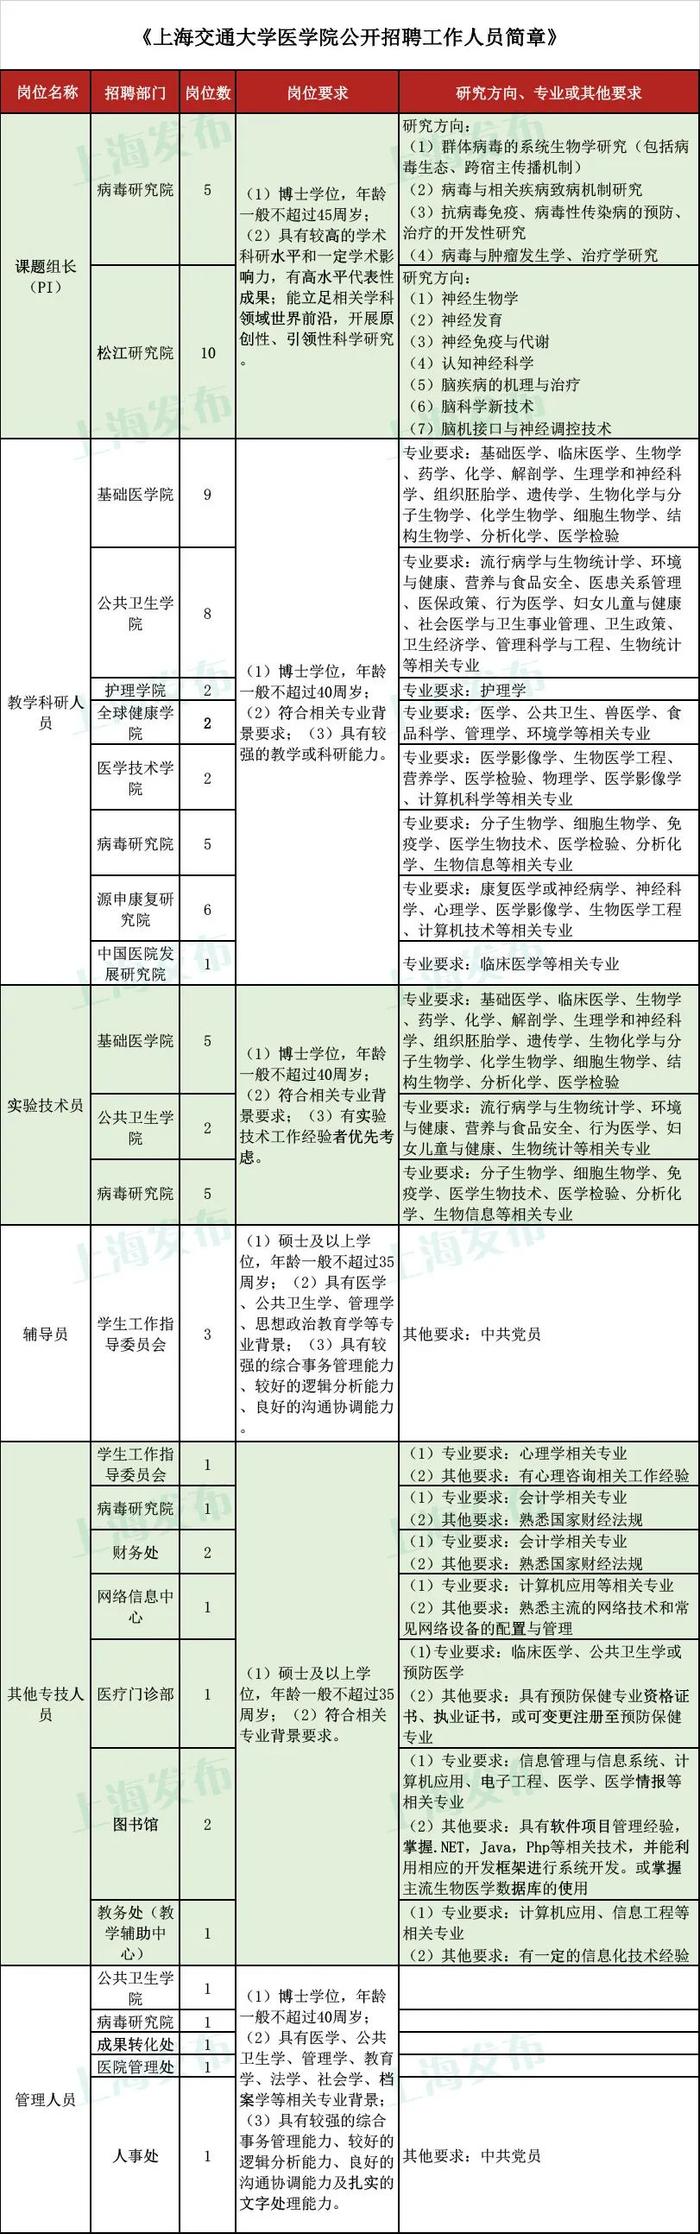 【就业】上海交通大学医学院及附属上海儿童医学中心多个岗位正在招聘，即日起报名